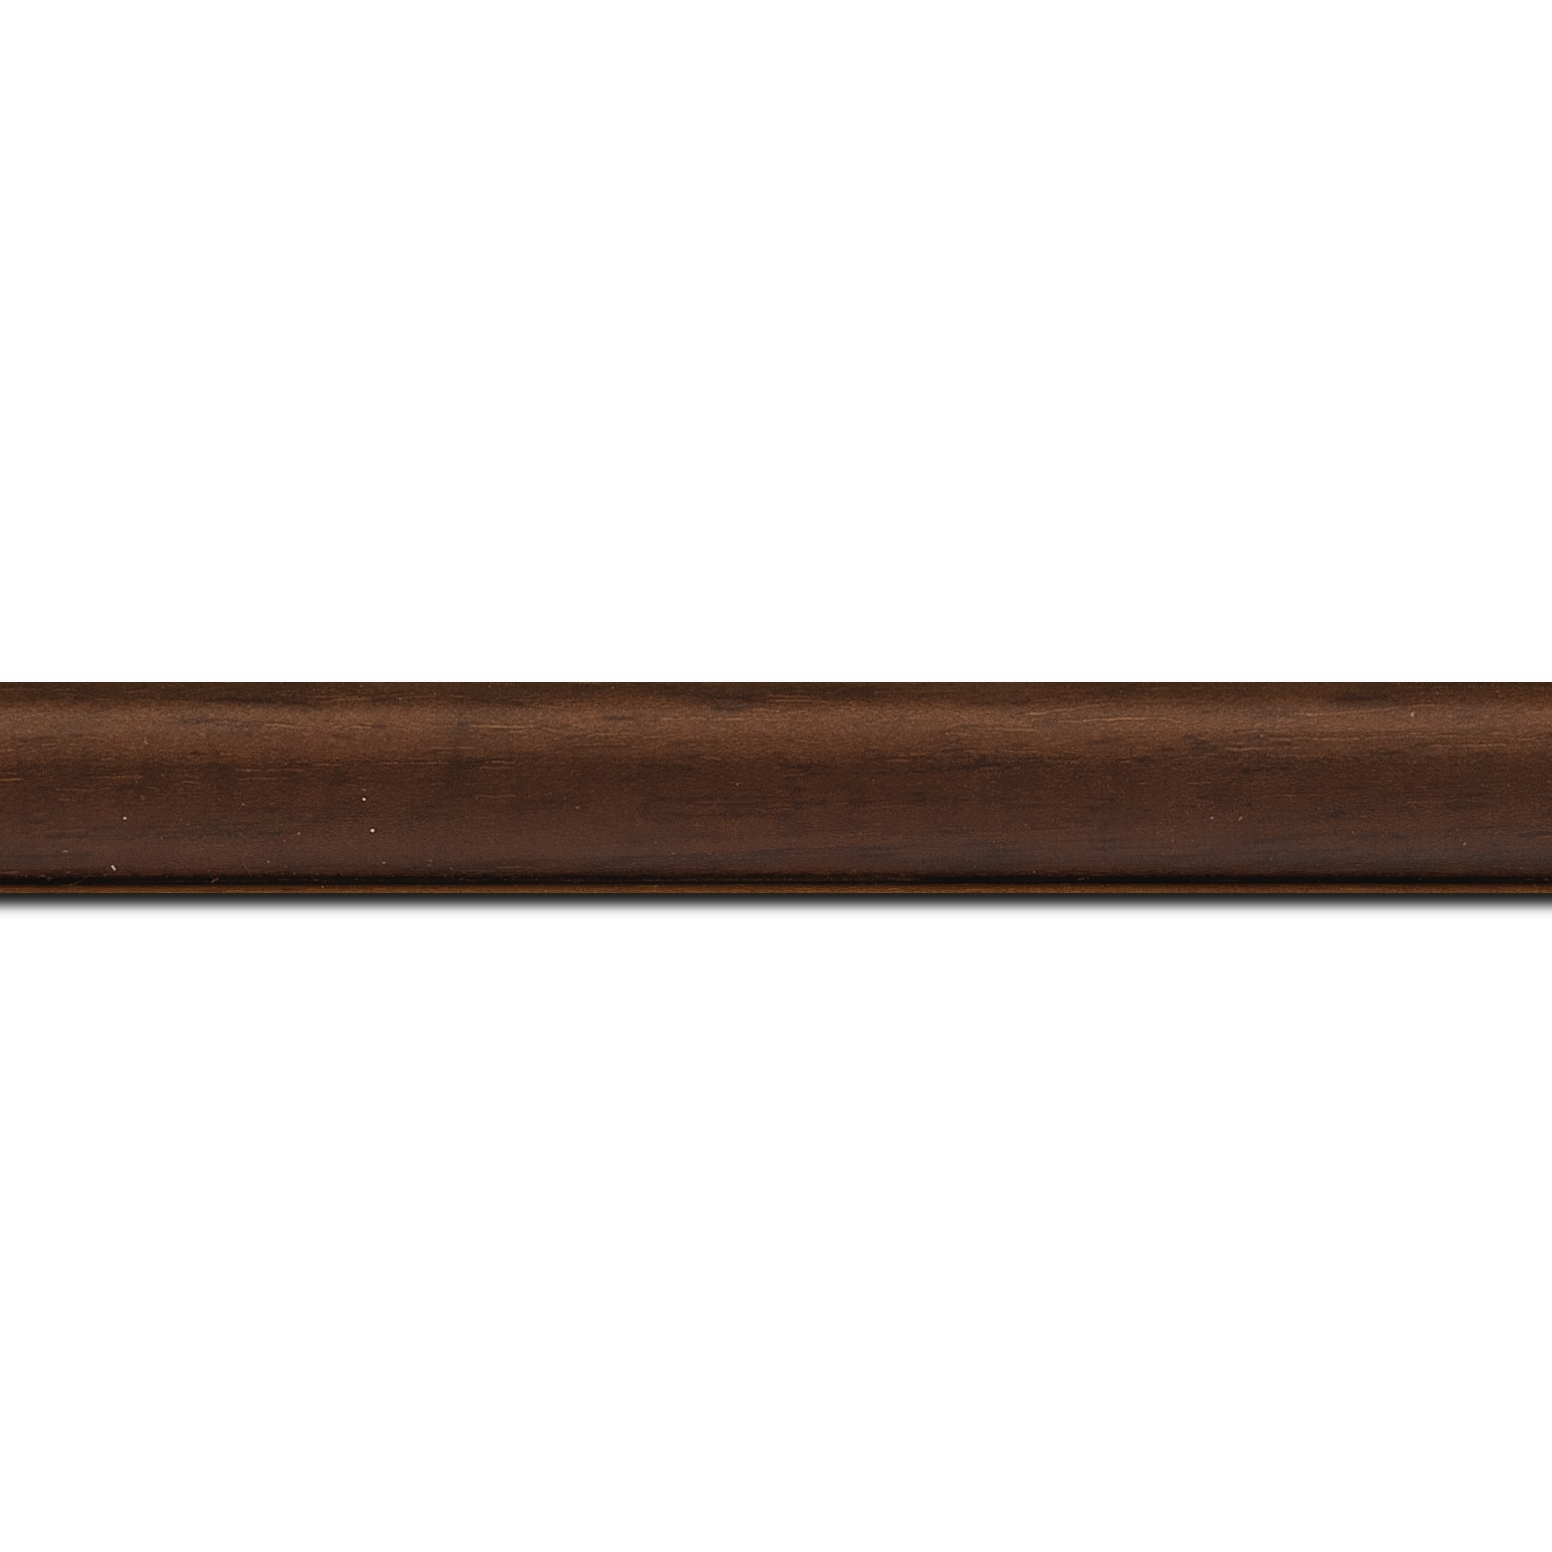 Pack par 12m, bois profil incurvé largeur 2.1cm couleur marron foncé satiné (longueur baguette pouvant varier entre 2.40m et 3m selon arrivage des bois)